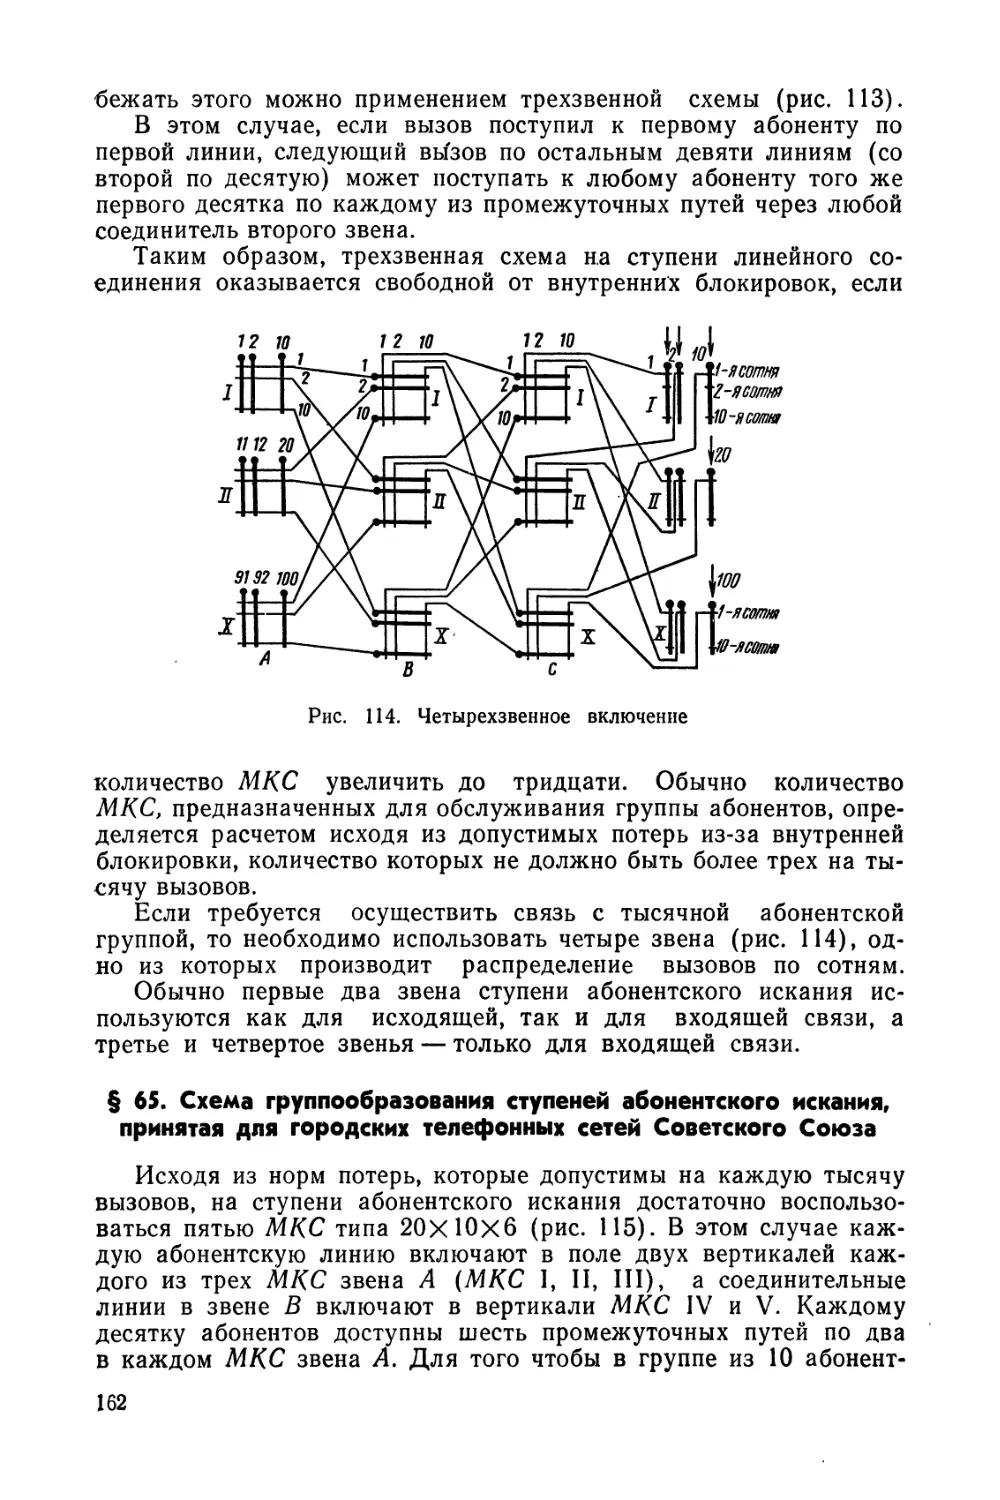 § 65. Схема группообразования ступеней абонентского искания, принятая для городских телефонных сетей Советского Союза